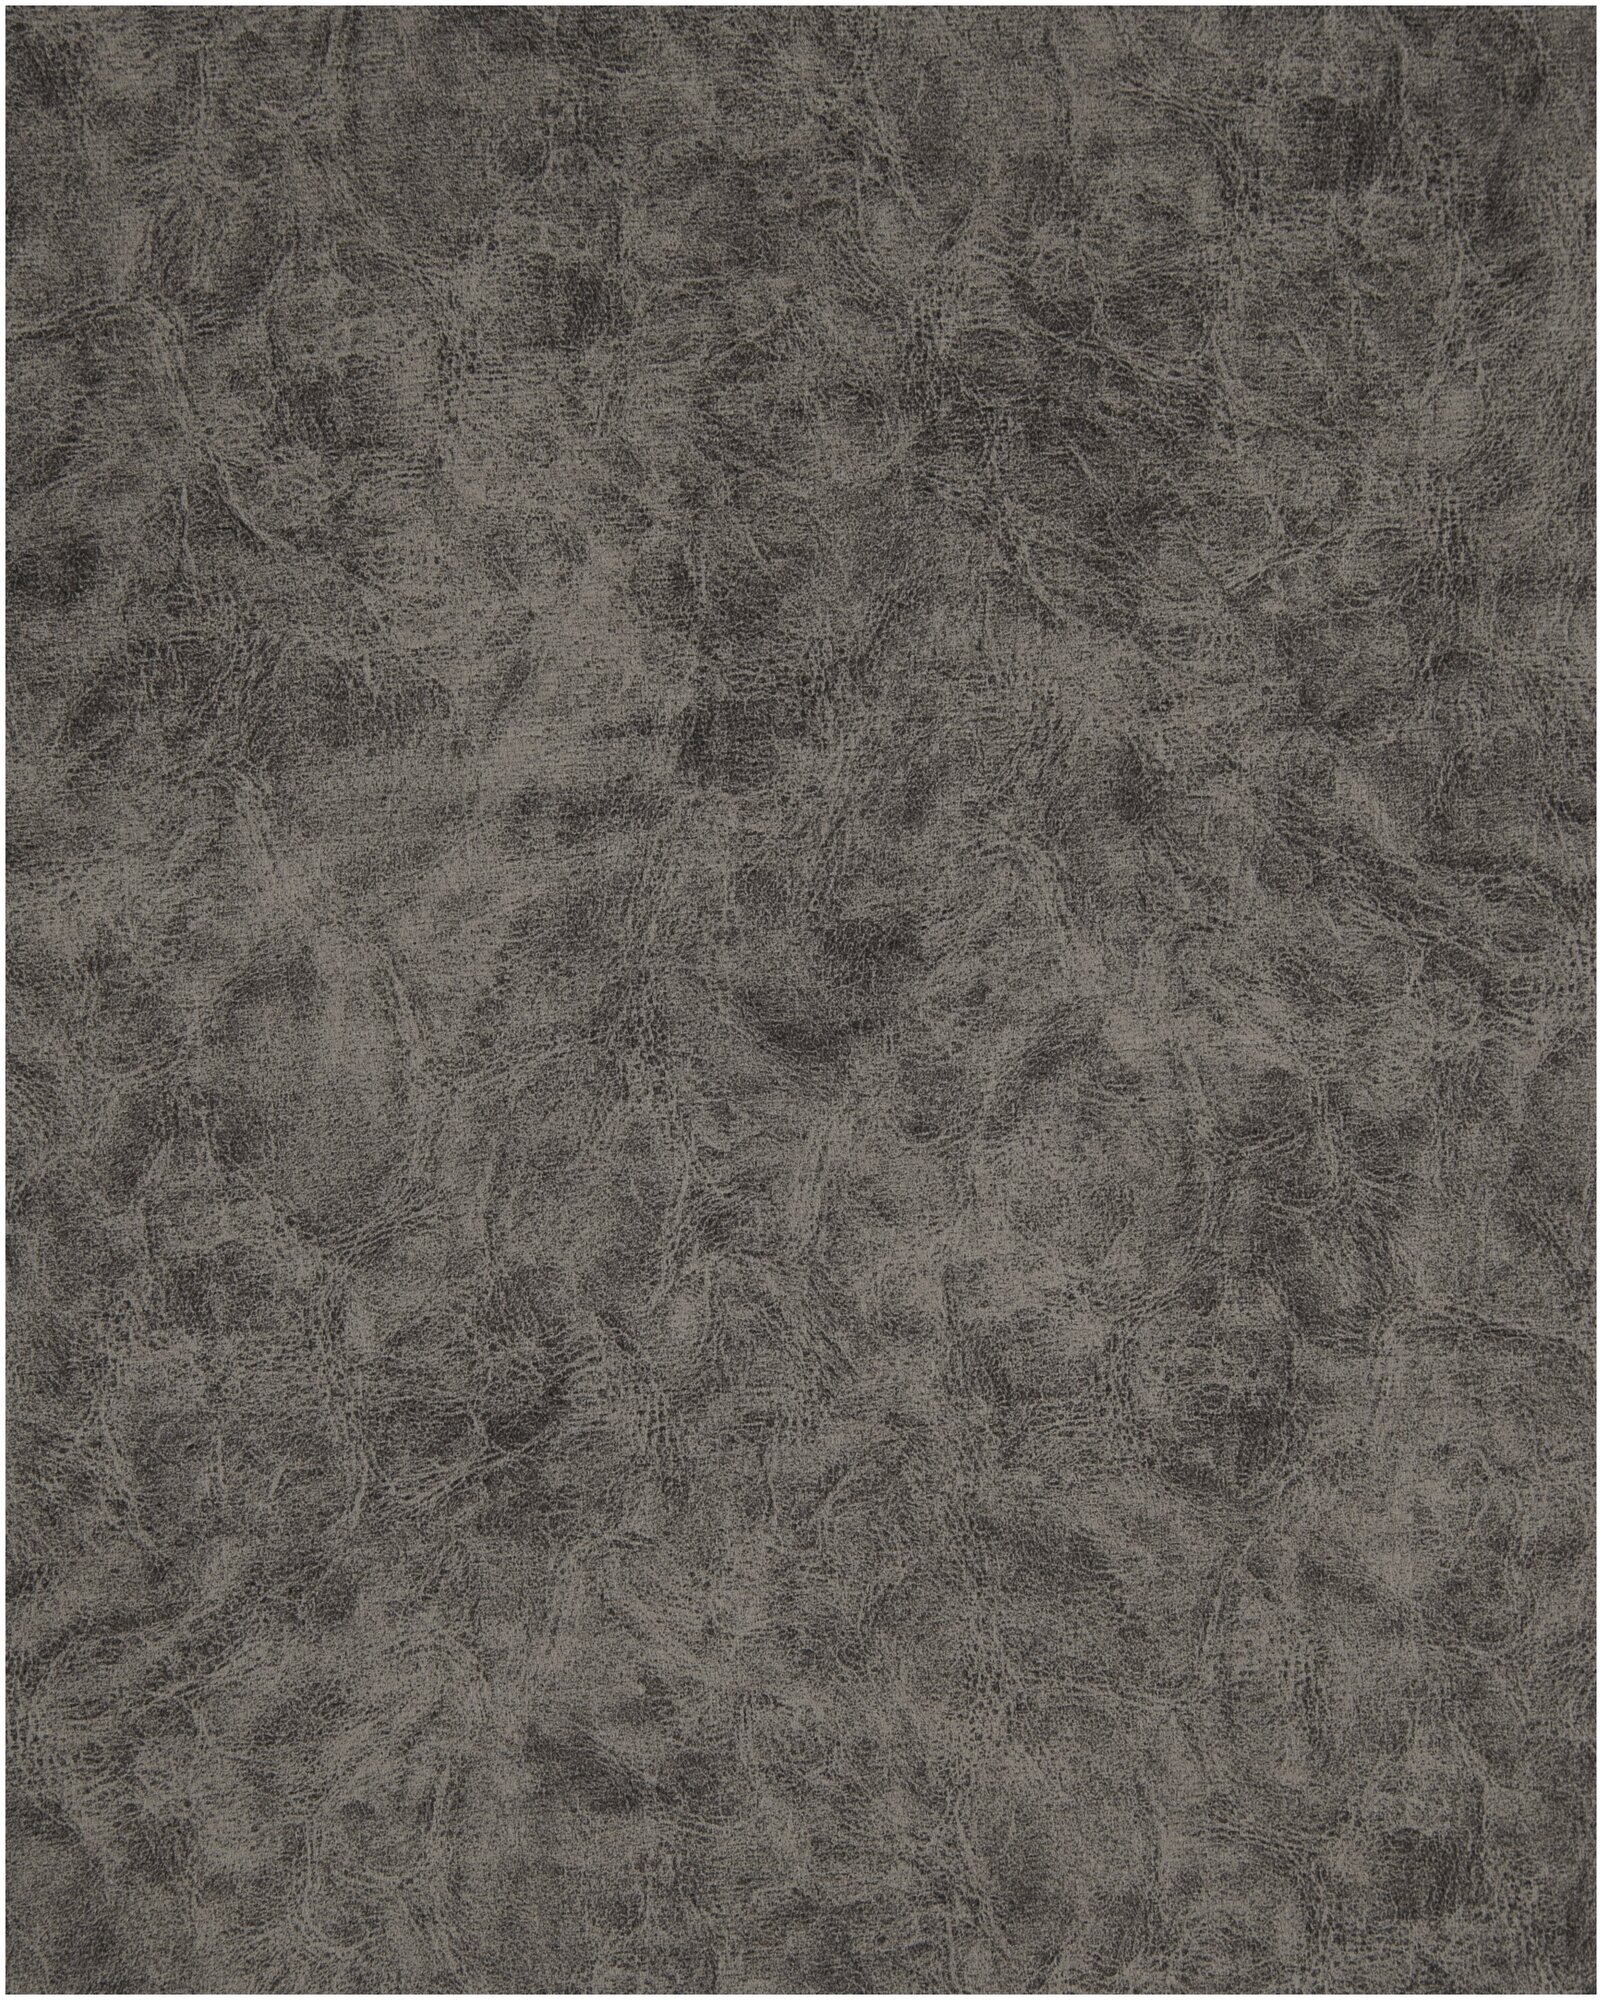 Ткань Велюр, модель Дарки, цвет Серый (6) (Ткань для шитья, для мебели)